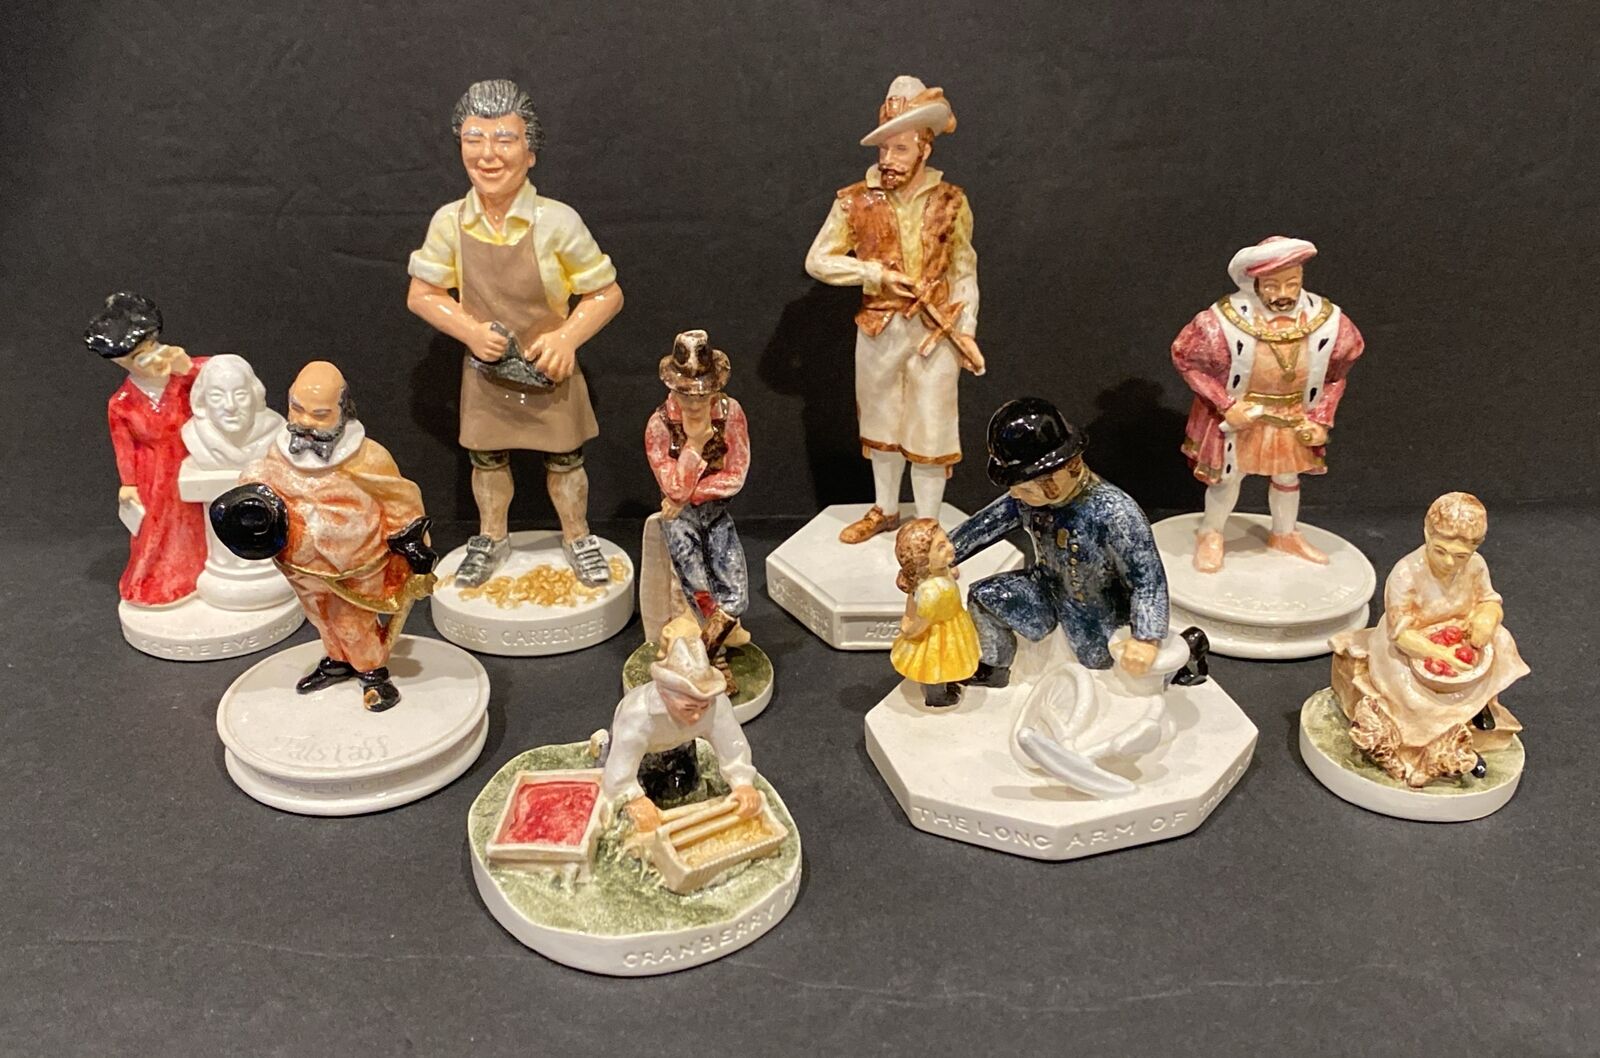 Sebastian Miniatures SML Figurines Limited Editions Lot of 9 Figurines Vintage